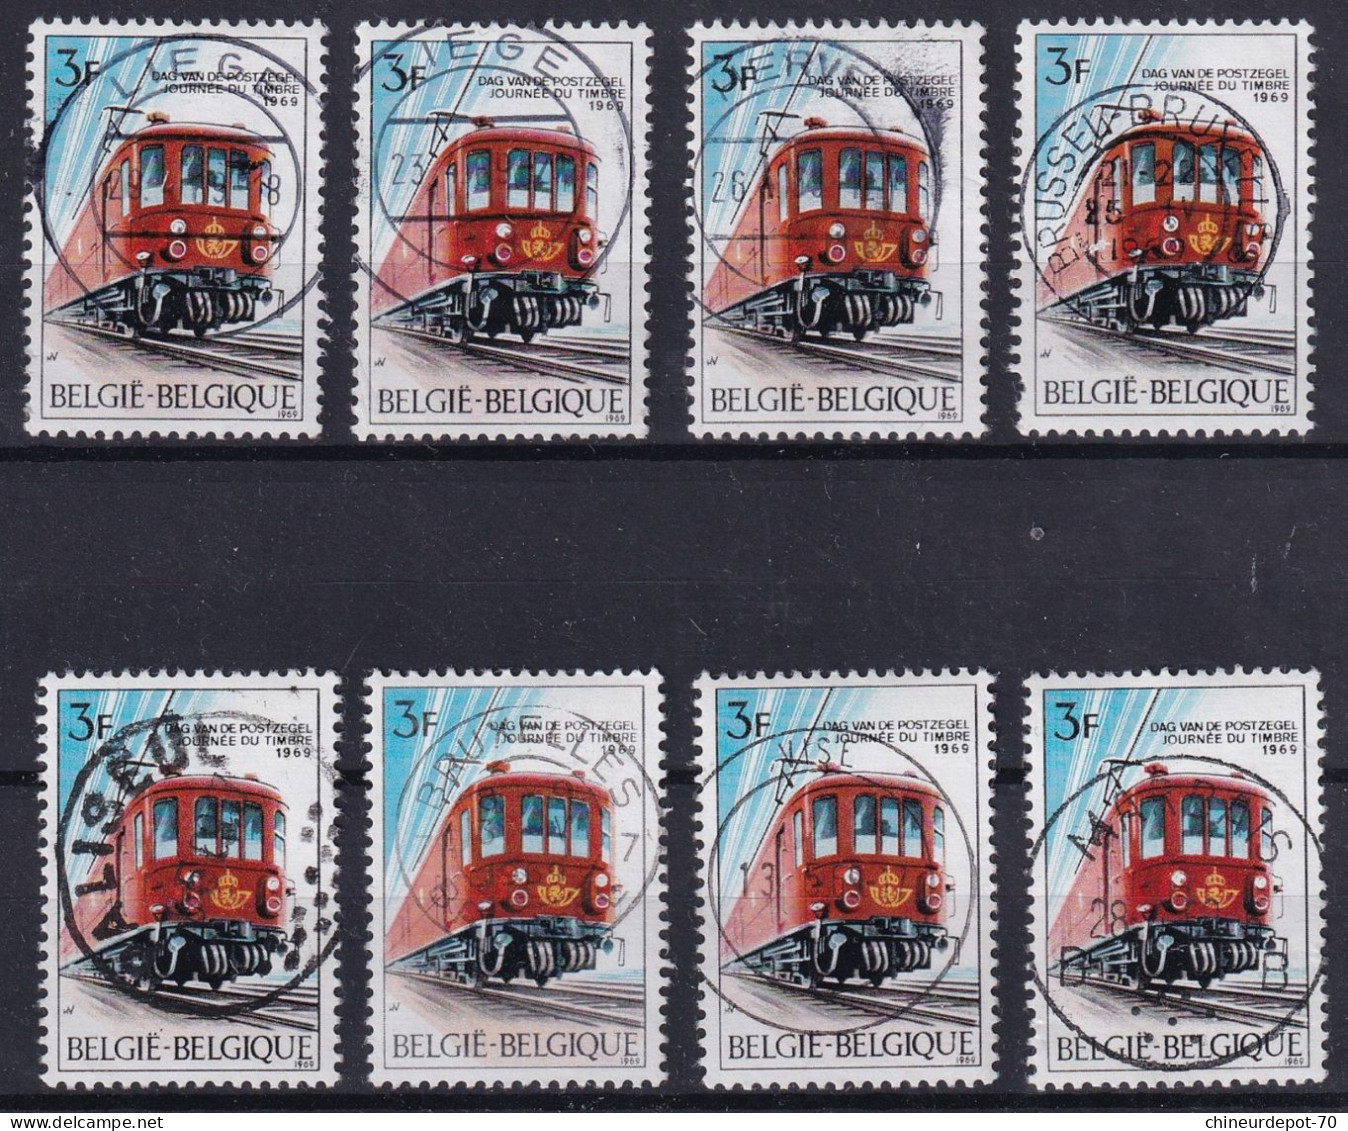 JOURNEE DU TIMBRE 1969 Train Cachet Bruxelles Brussel LIEGE HERVE PALISEUL VISE MARBAIS - Used Stamps